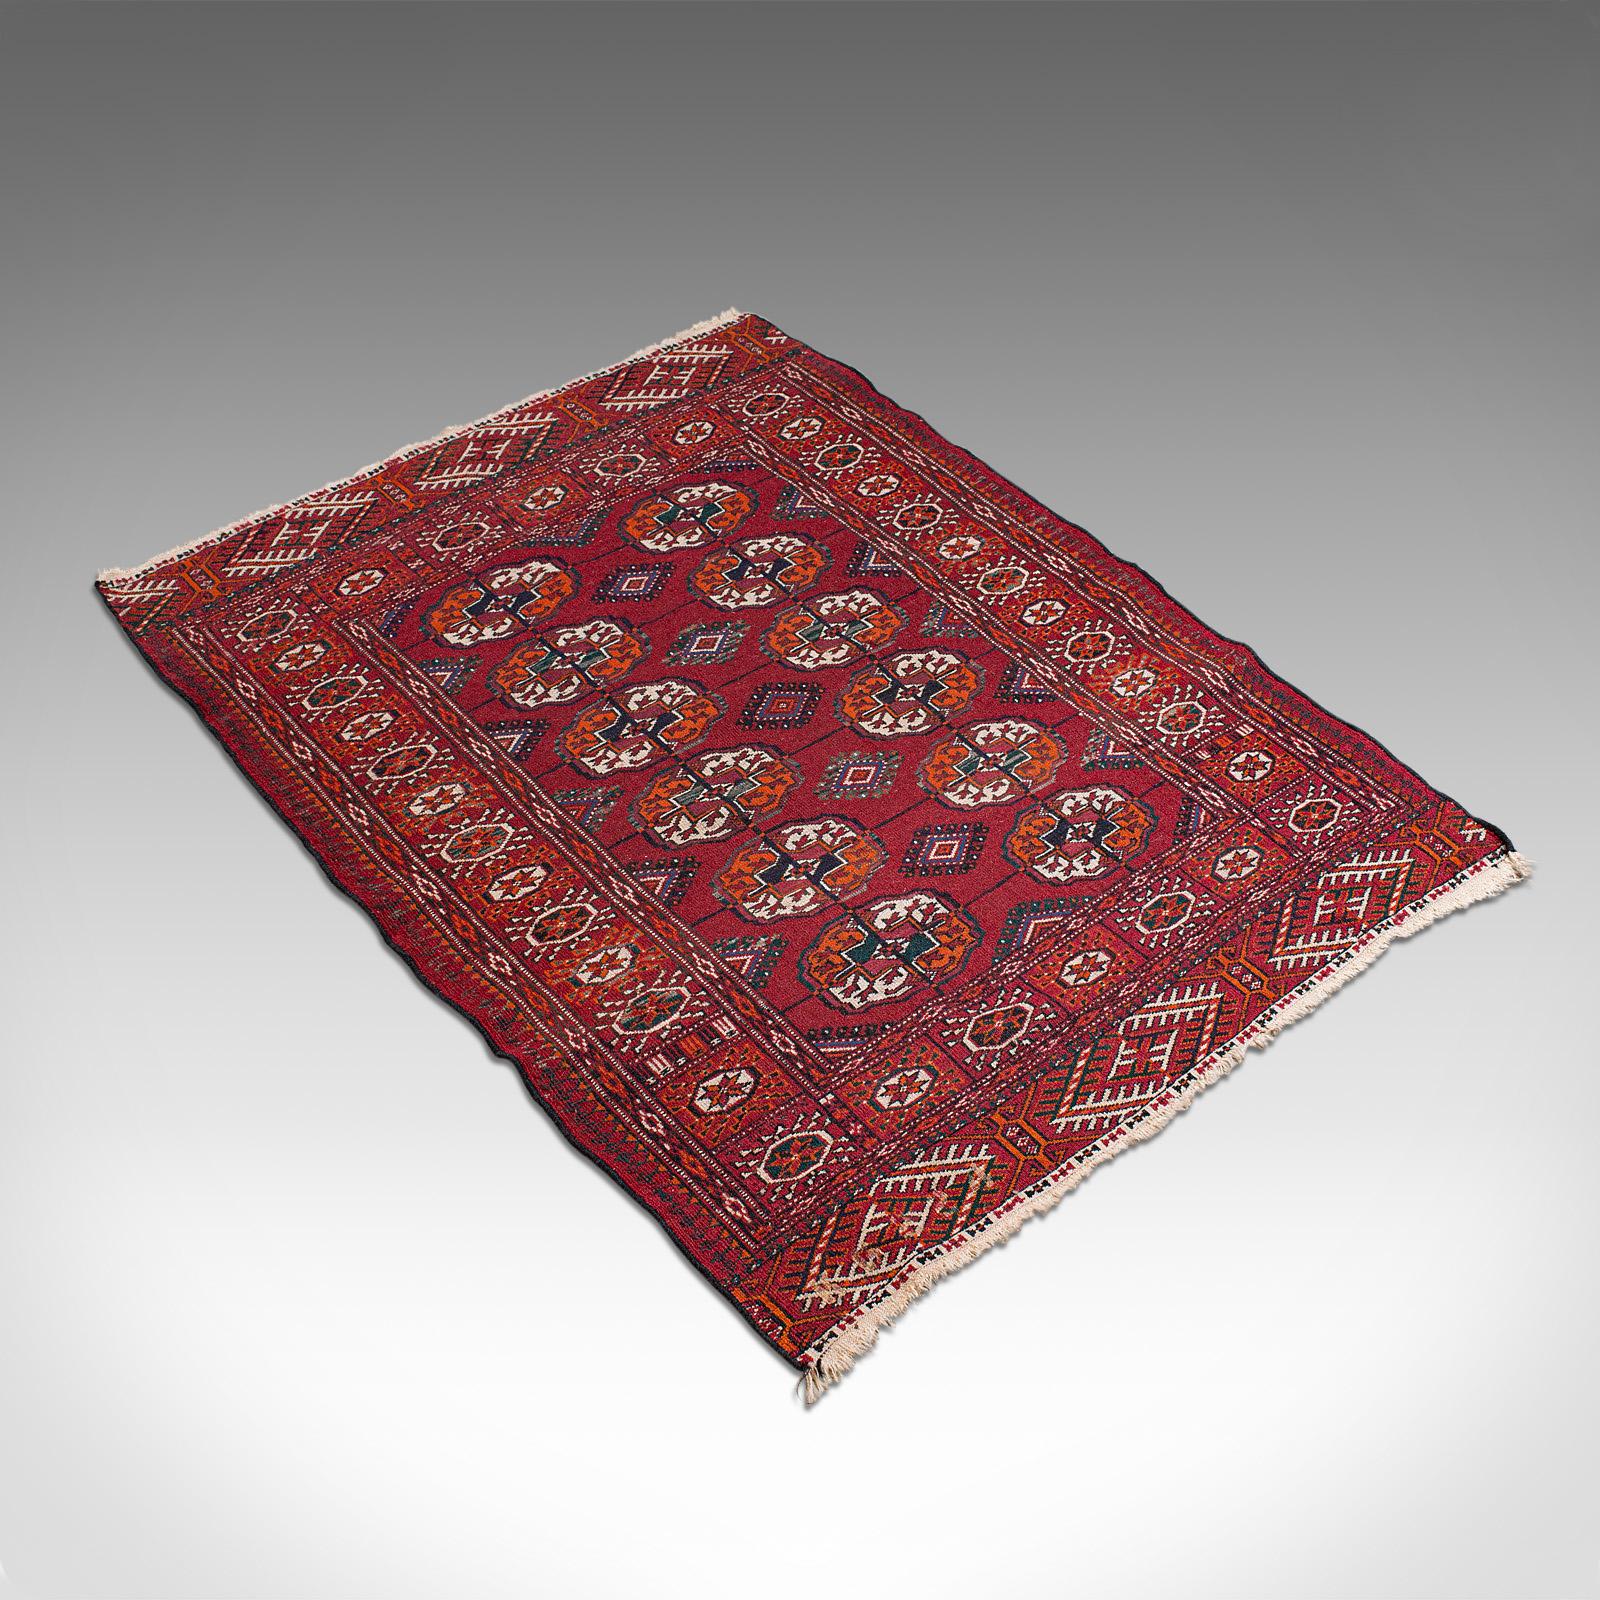 19th Century Antique Tekke Bokhara Rug, Middle Eastern, Nomadic, Turkoman, Carpet, circa 1900